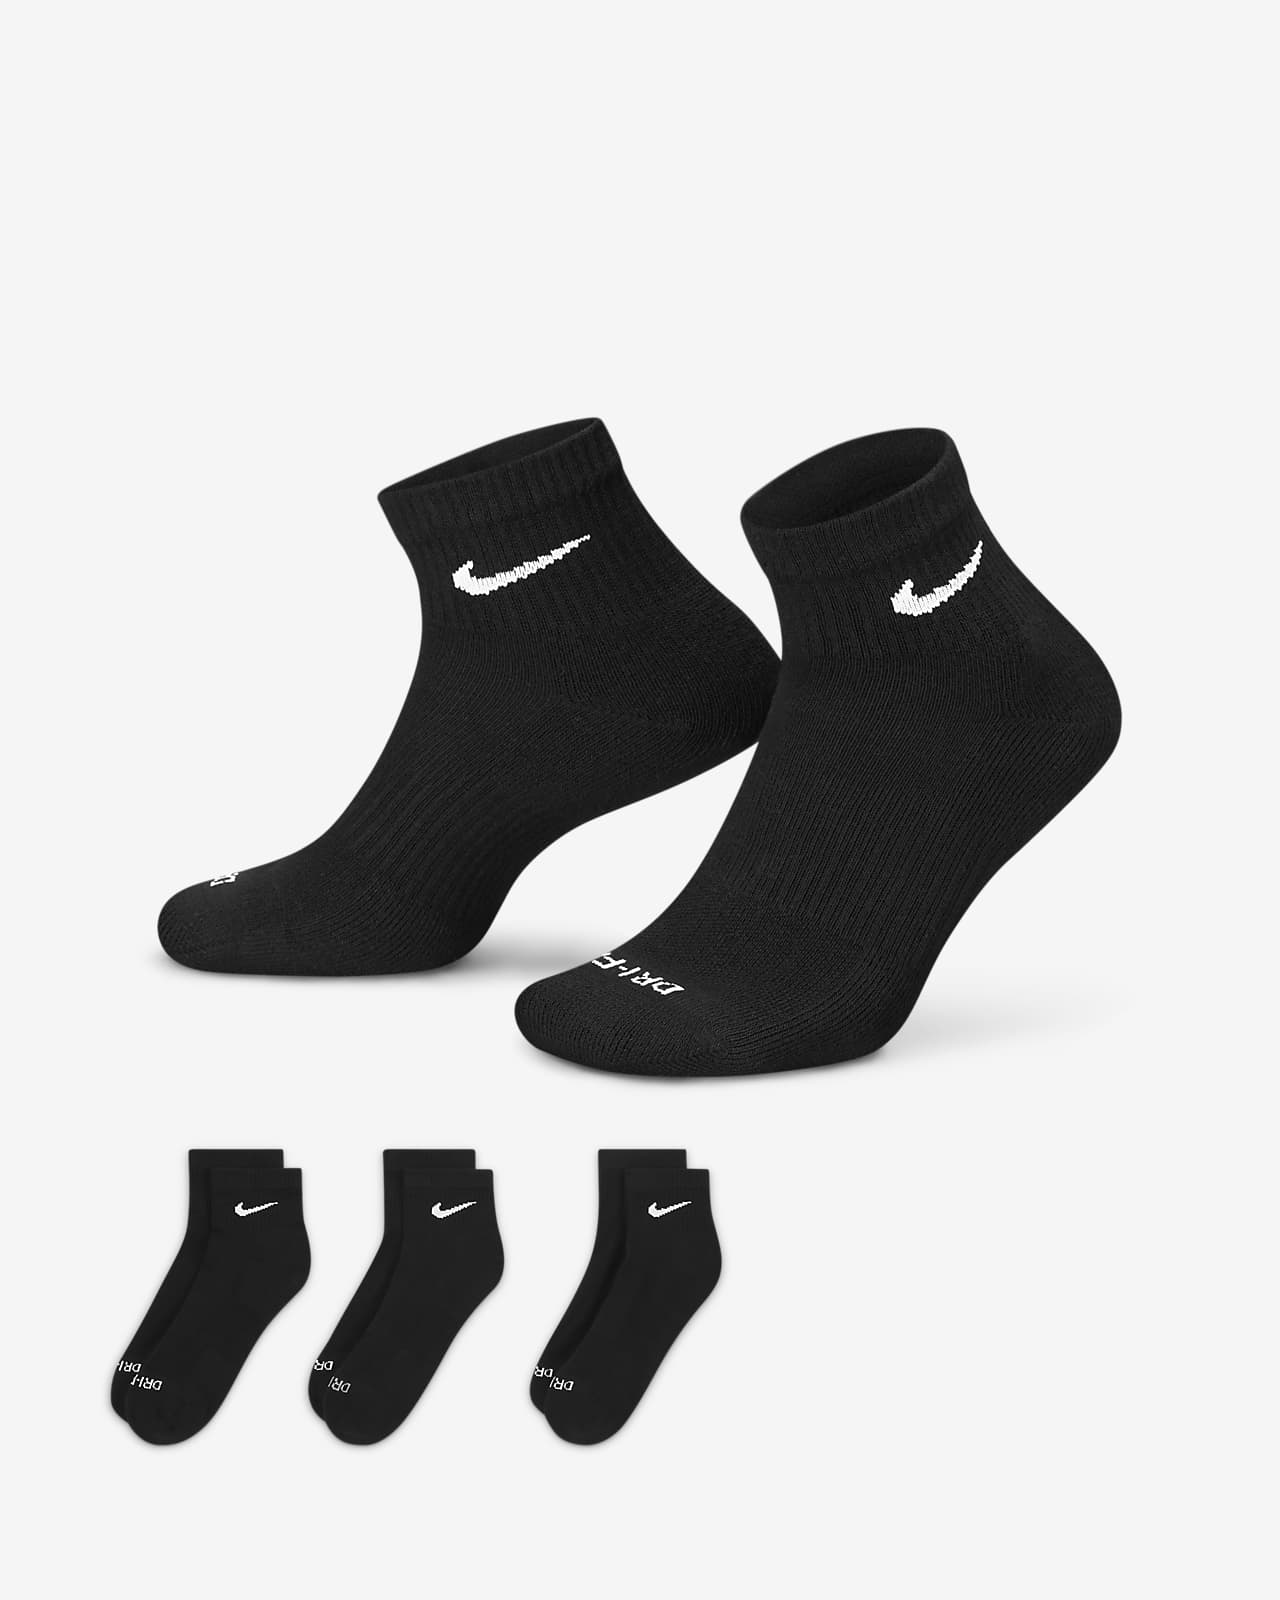 Lot de 3 paires de chaussettes Nike Everyday Plus Cushioned - Nike - Femme  - Entretien physique